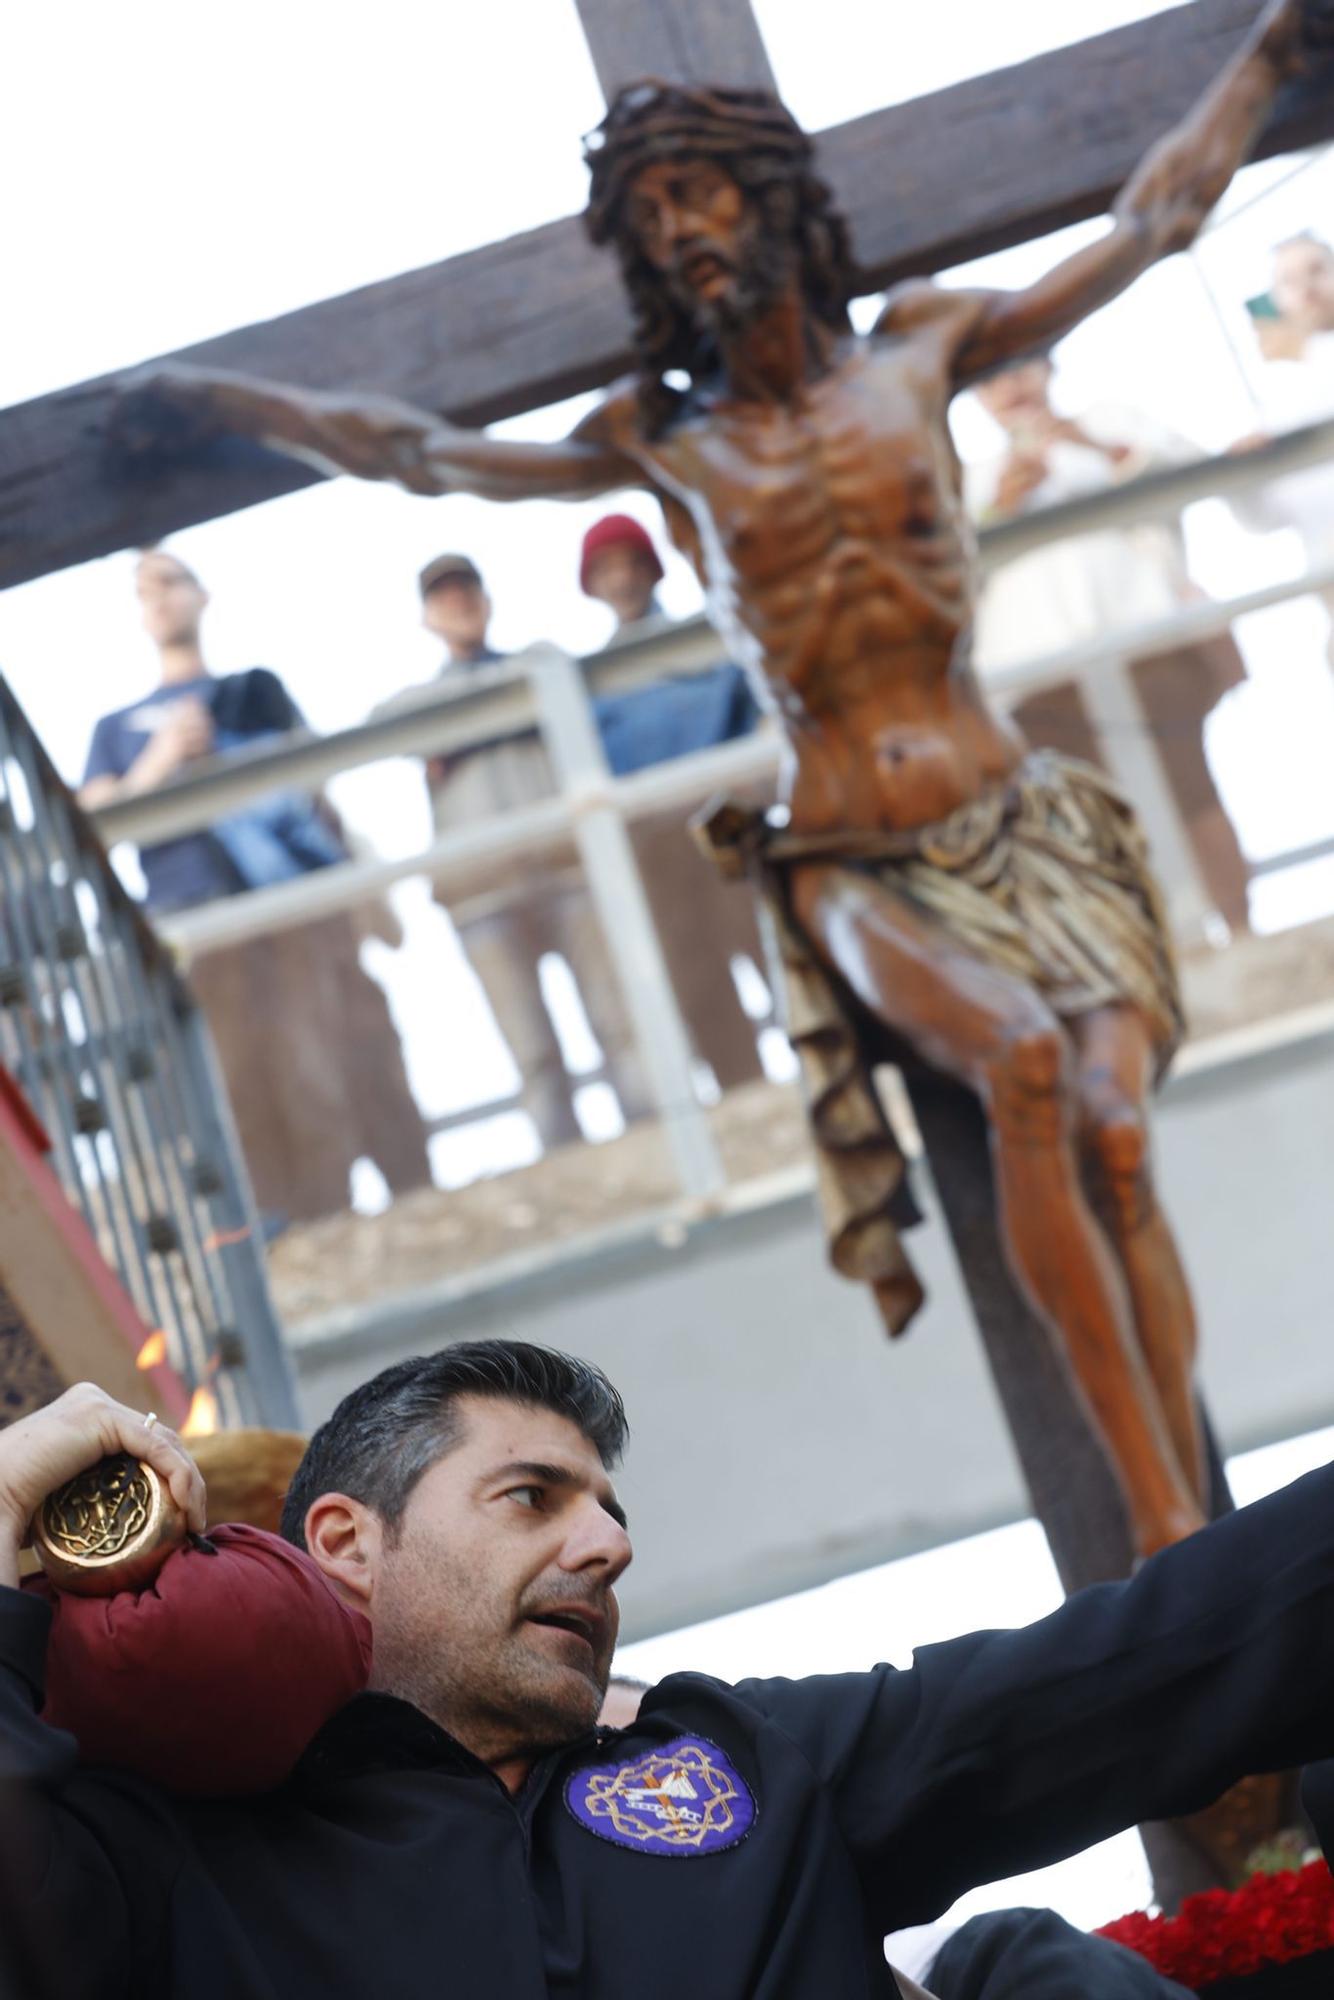 Gran expectación en el casco antiguo de Alicante para ver la procesión de Santa Cruz